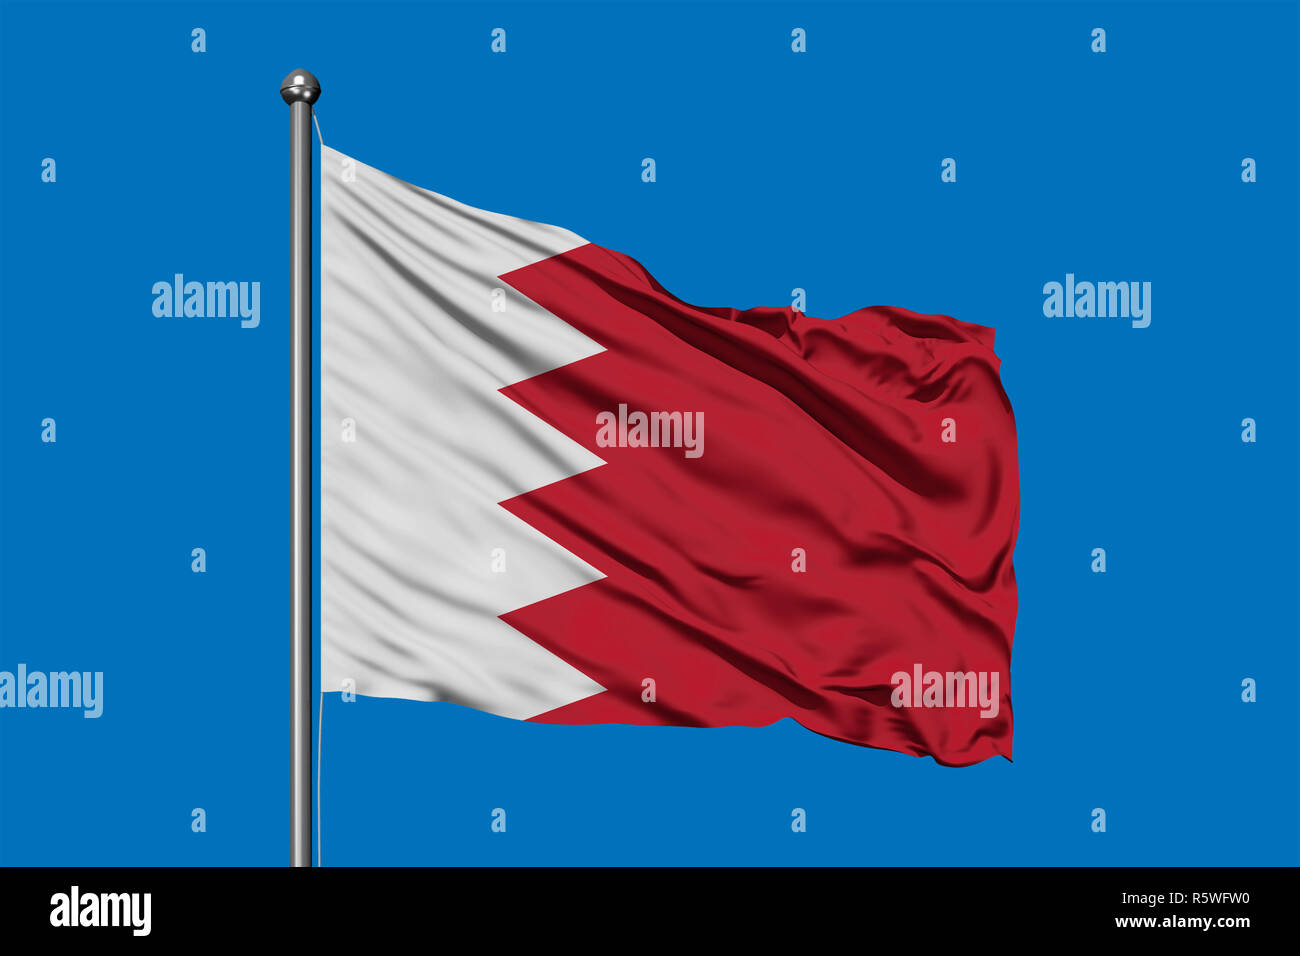 Flagge von Bahrain winken im Wind gegen den tiefblauen Himmel. Bahrainische Fahne. Stockfoto